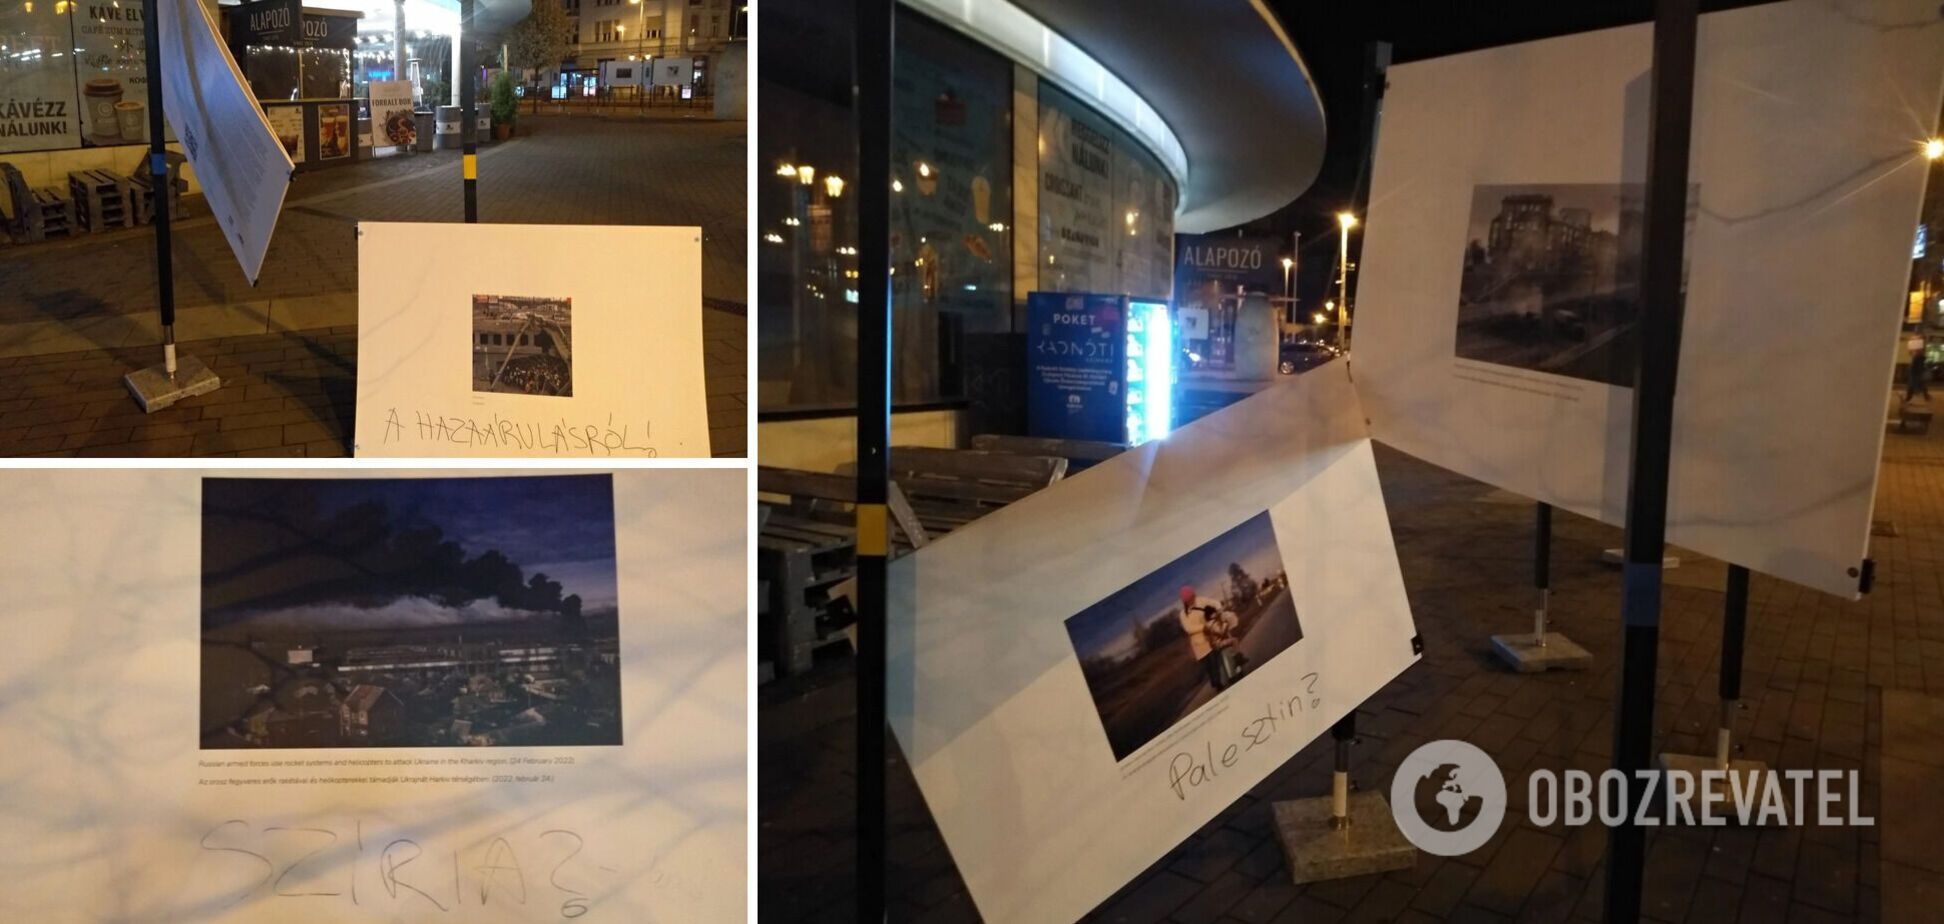 У Будапешті вандали понівечили виставку, яка розповідала про злочини російських окупантів в Україні. Фото